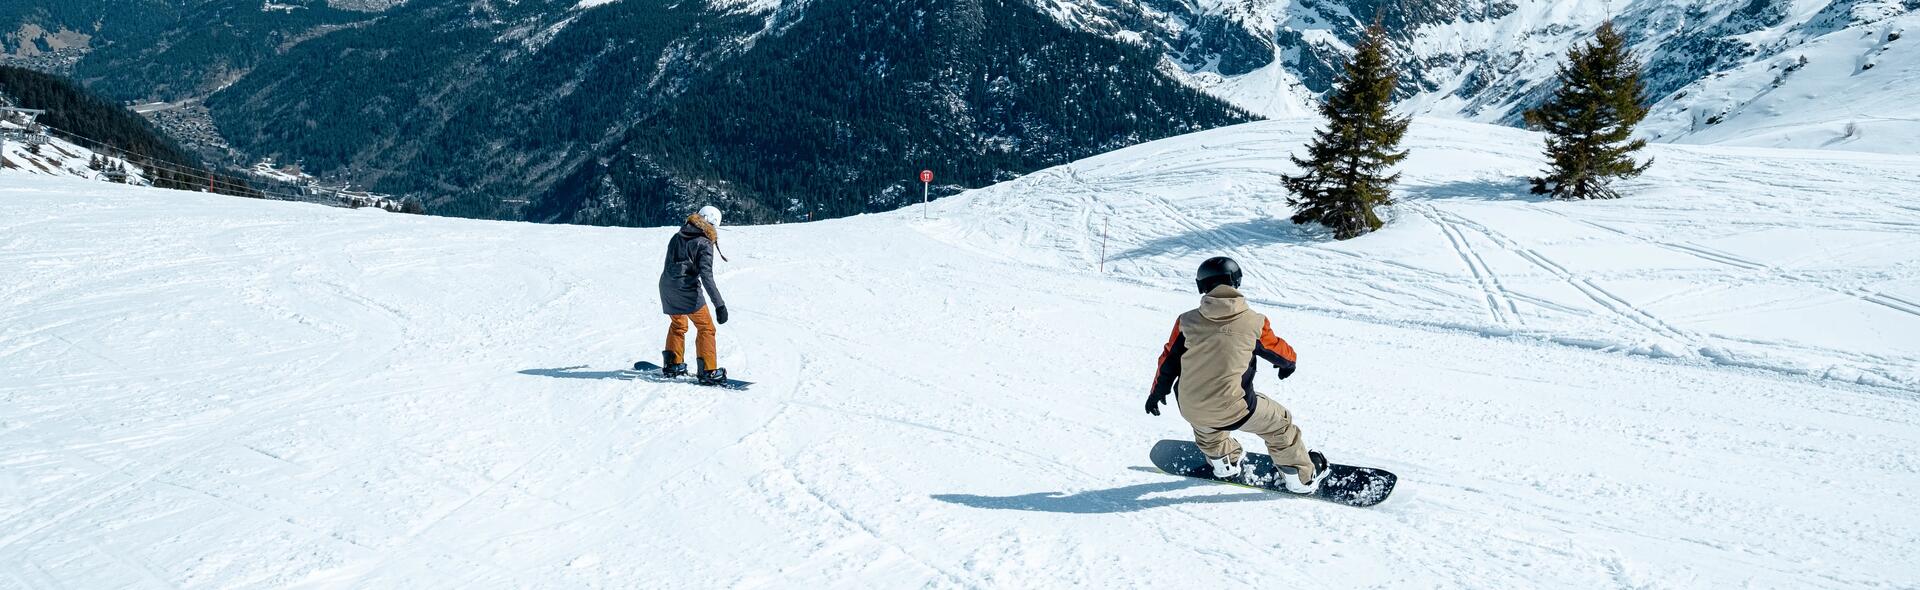 Hur väljer jag snowboard?